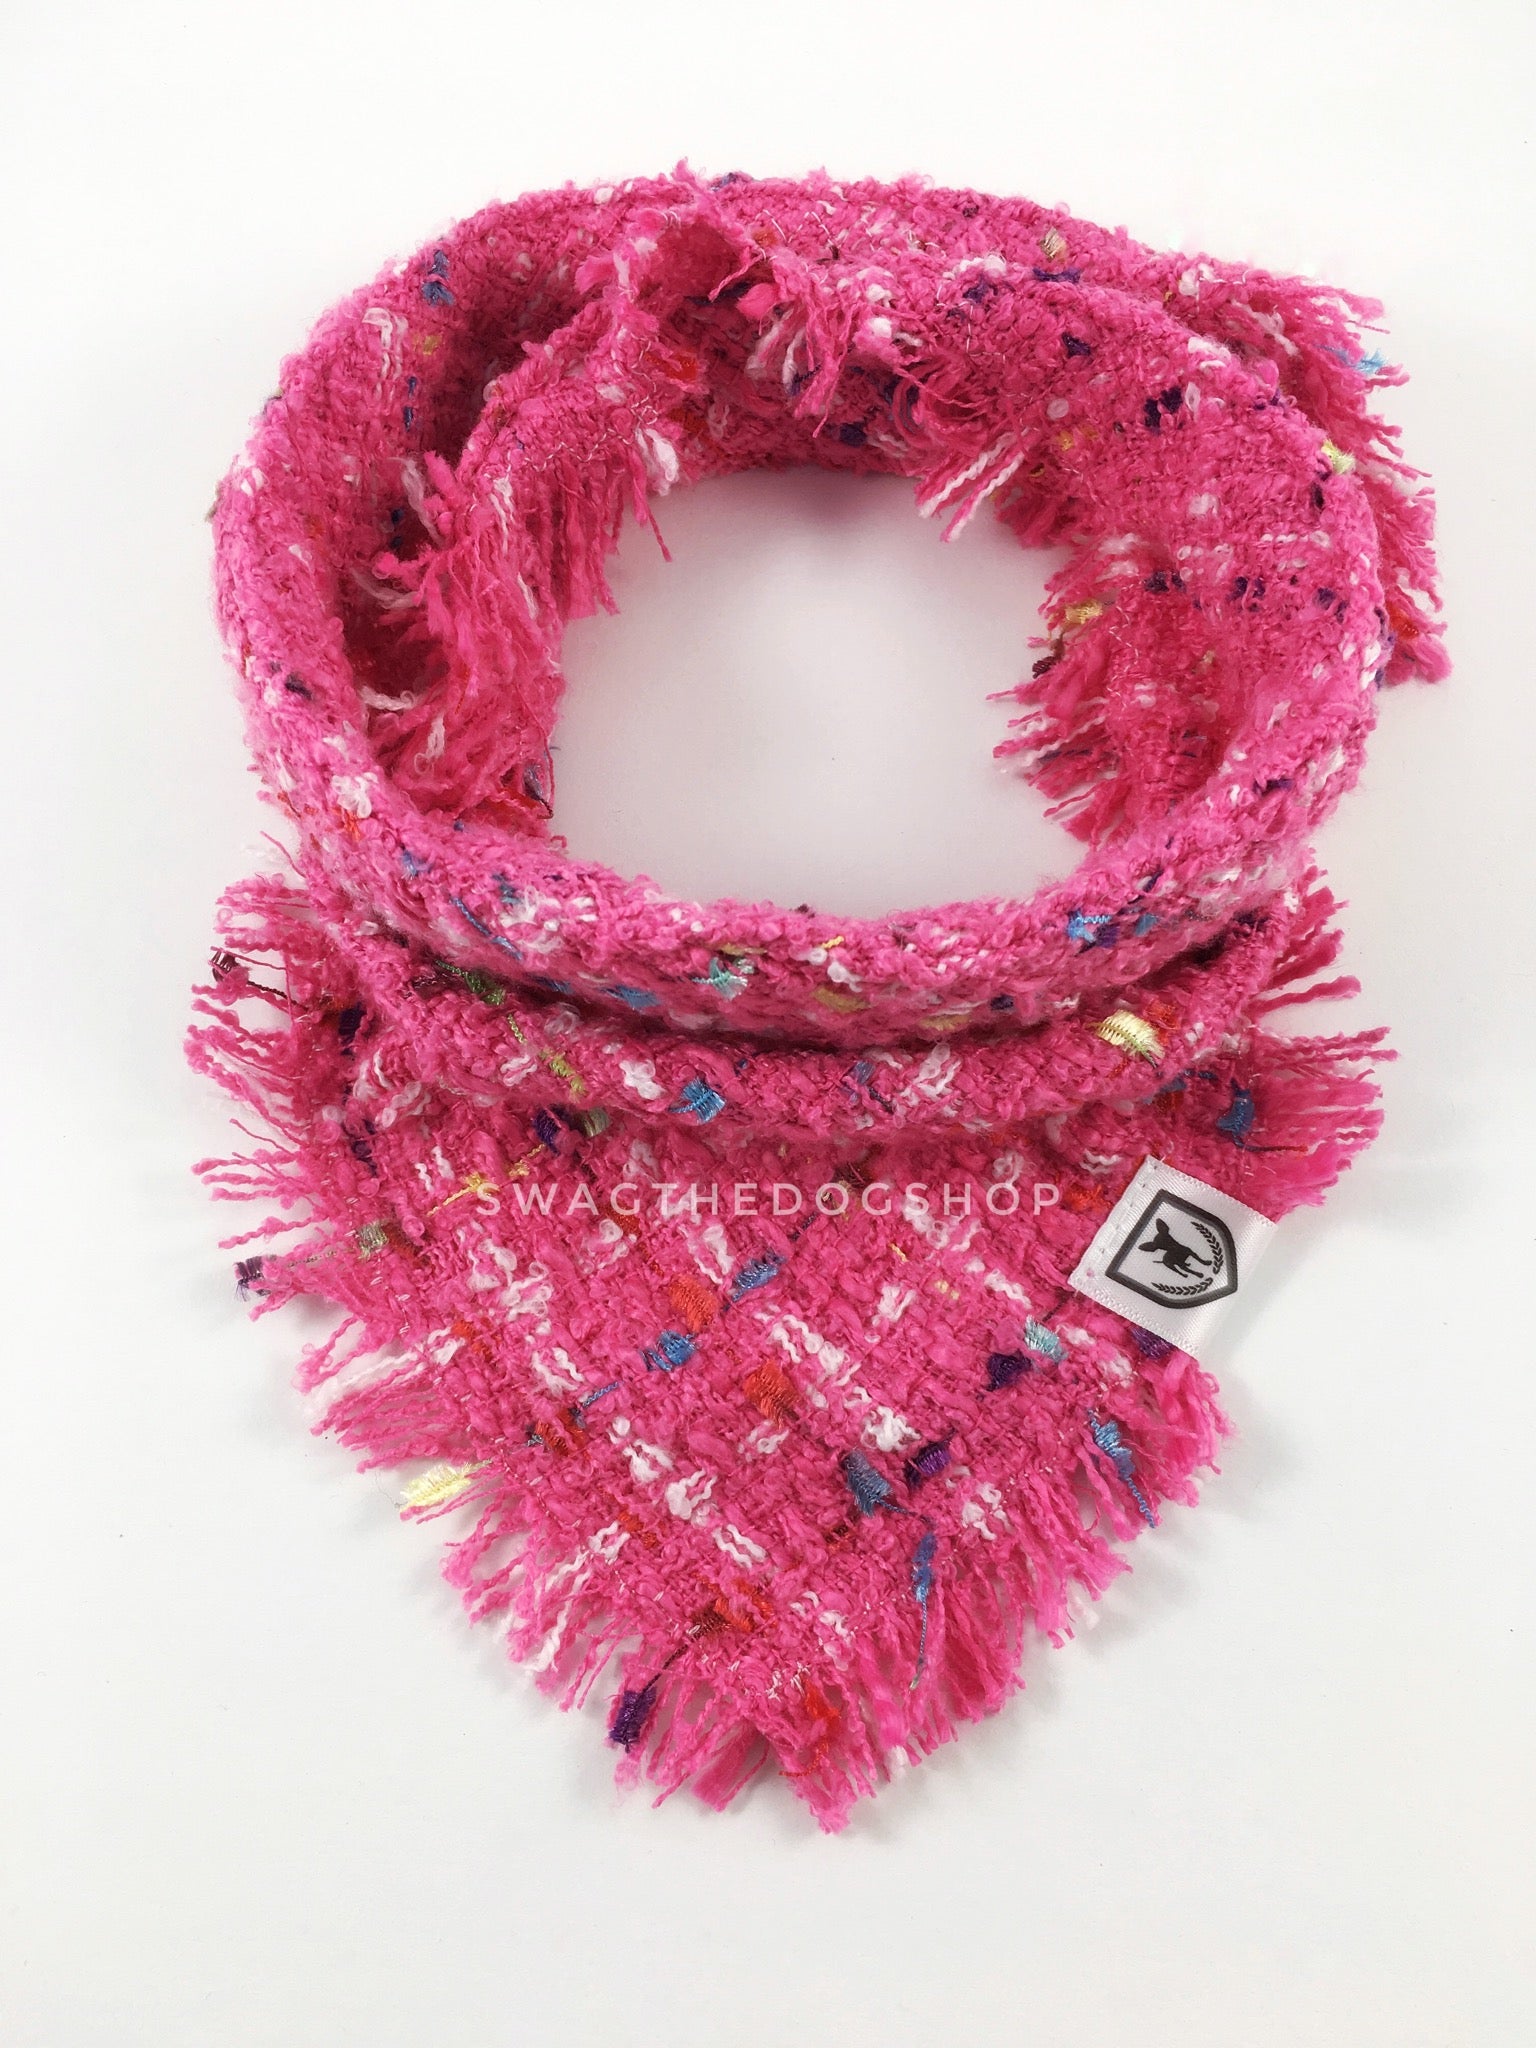 Hot Pink Tweed Swagdana with Frayed Edges - Product Shot. Dog Bandana. Dog Scarf.